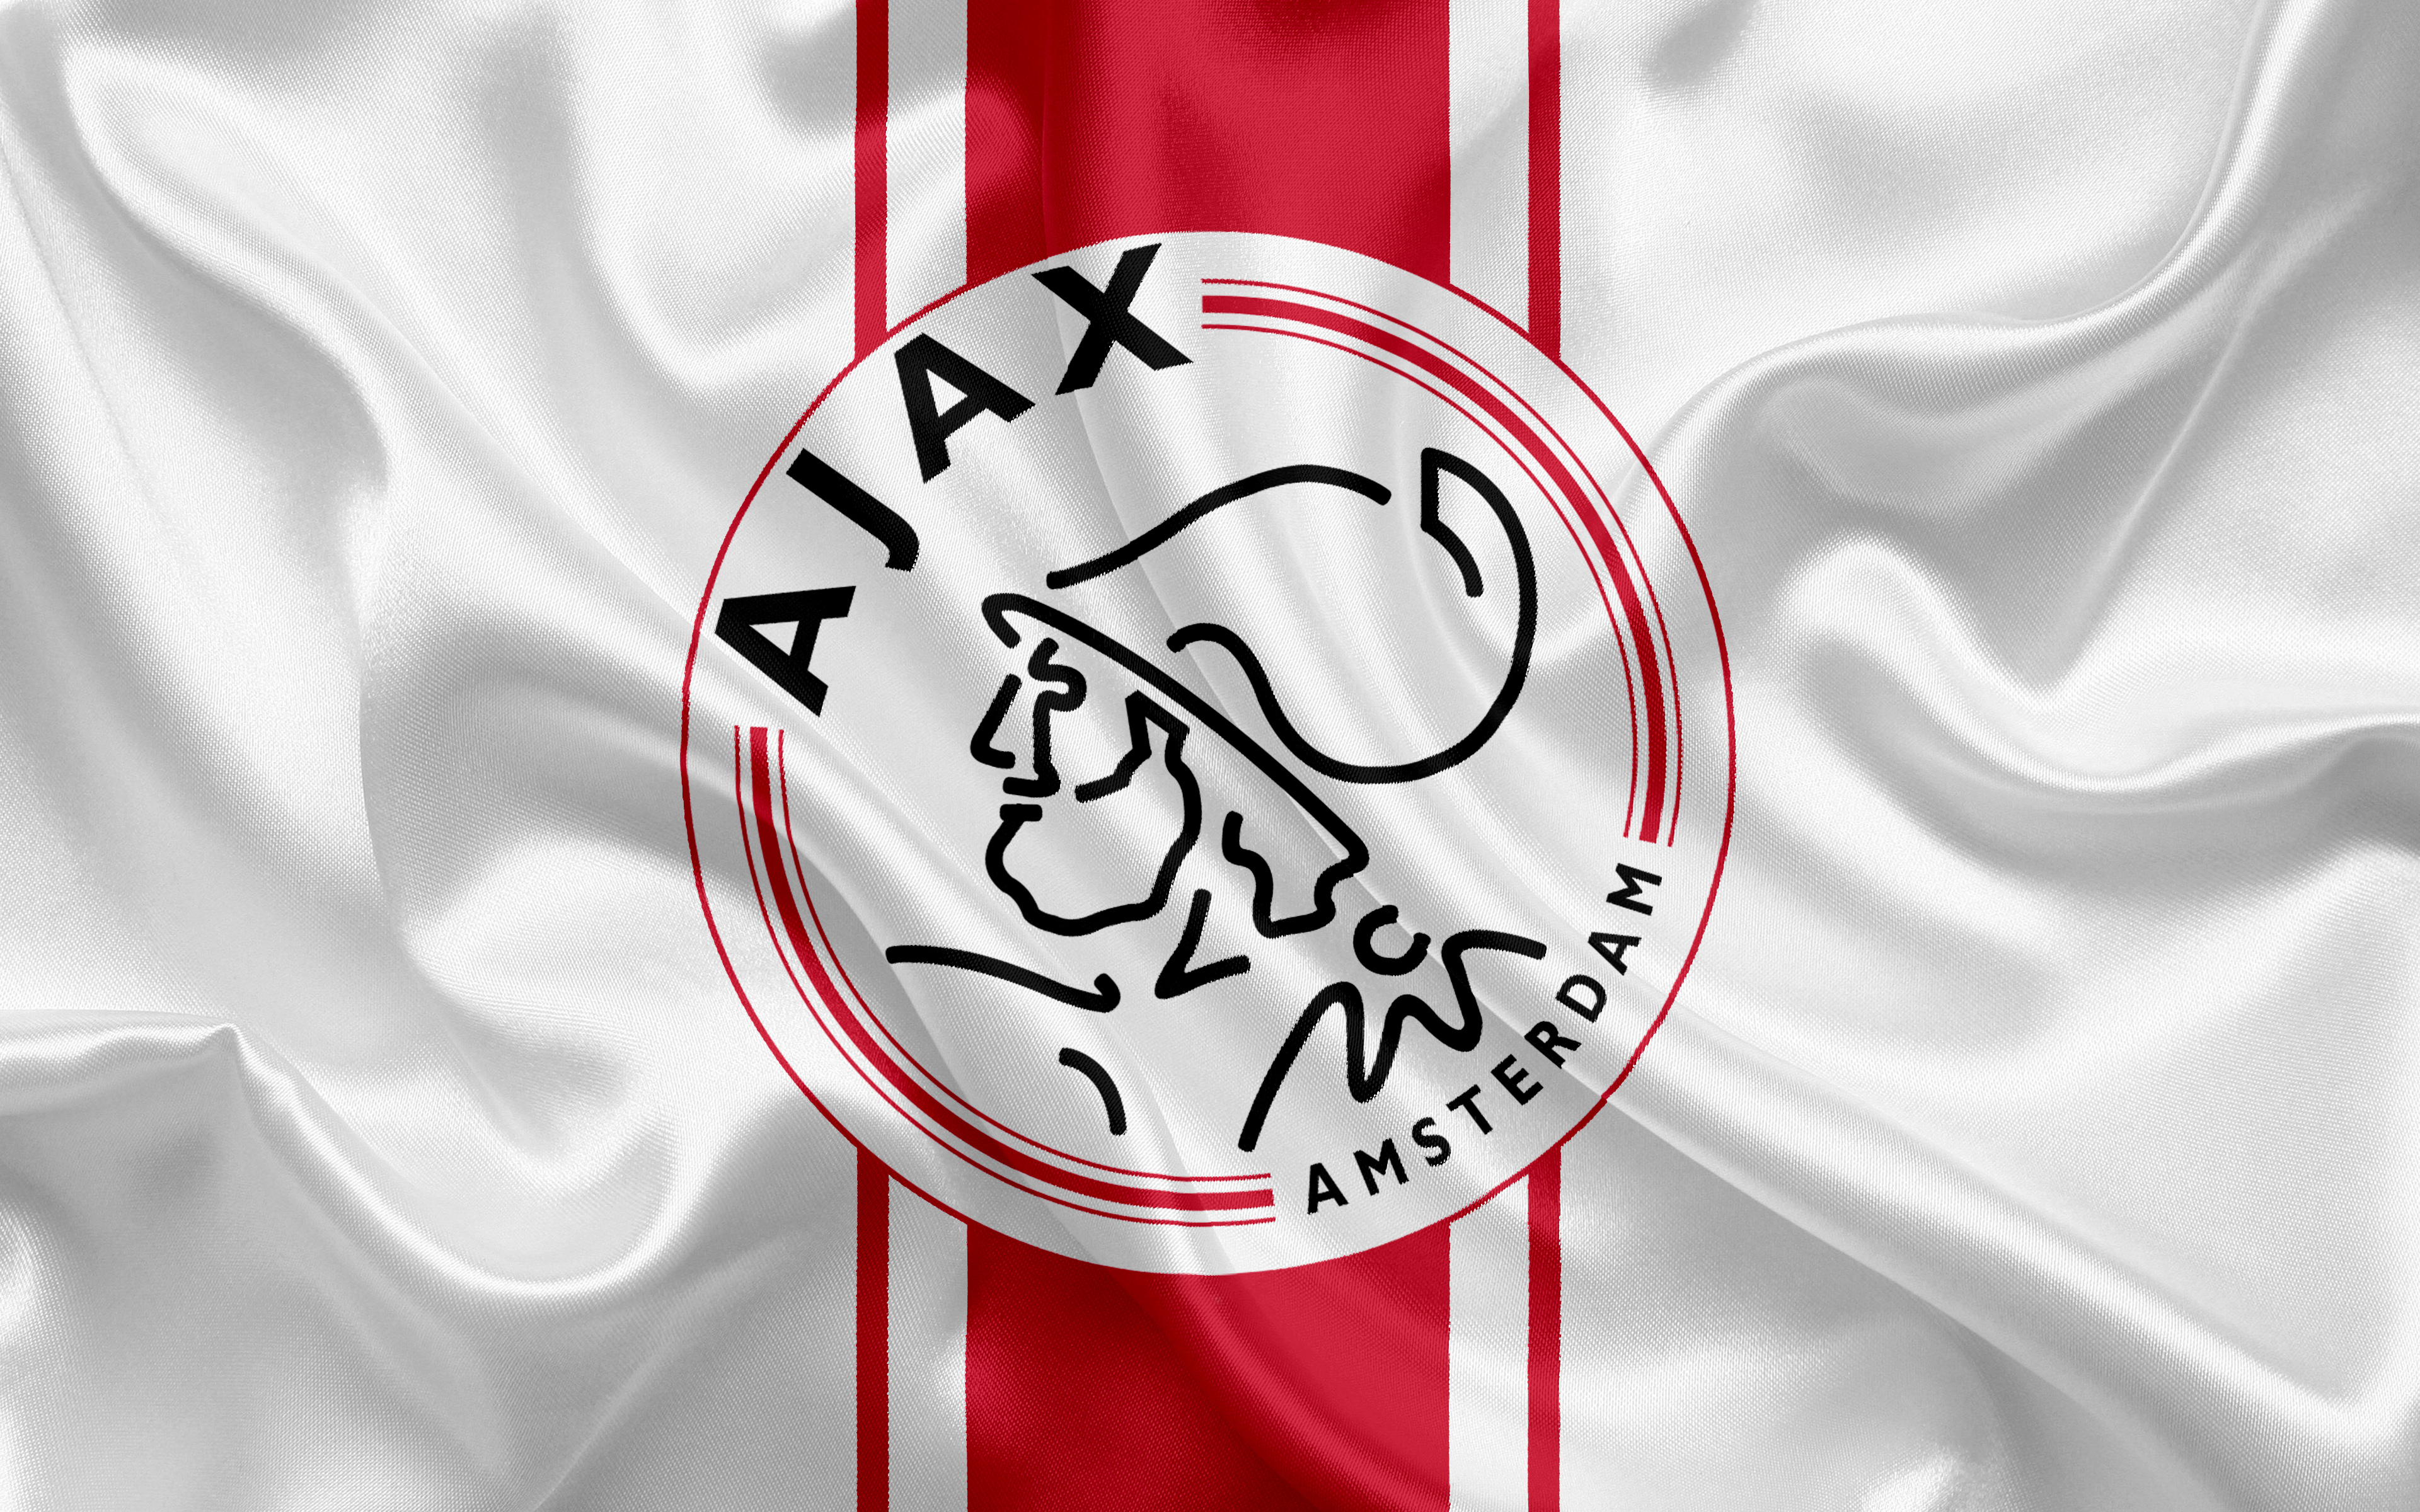 Los mejores fondos de pantalla de Afc Ajax para la pantalla del teléfono